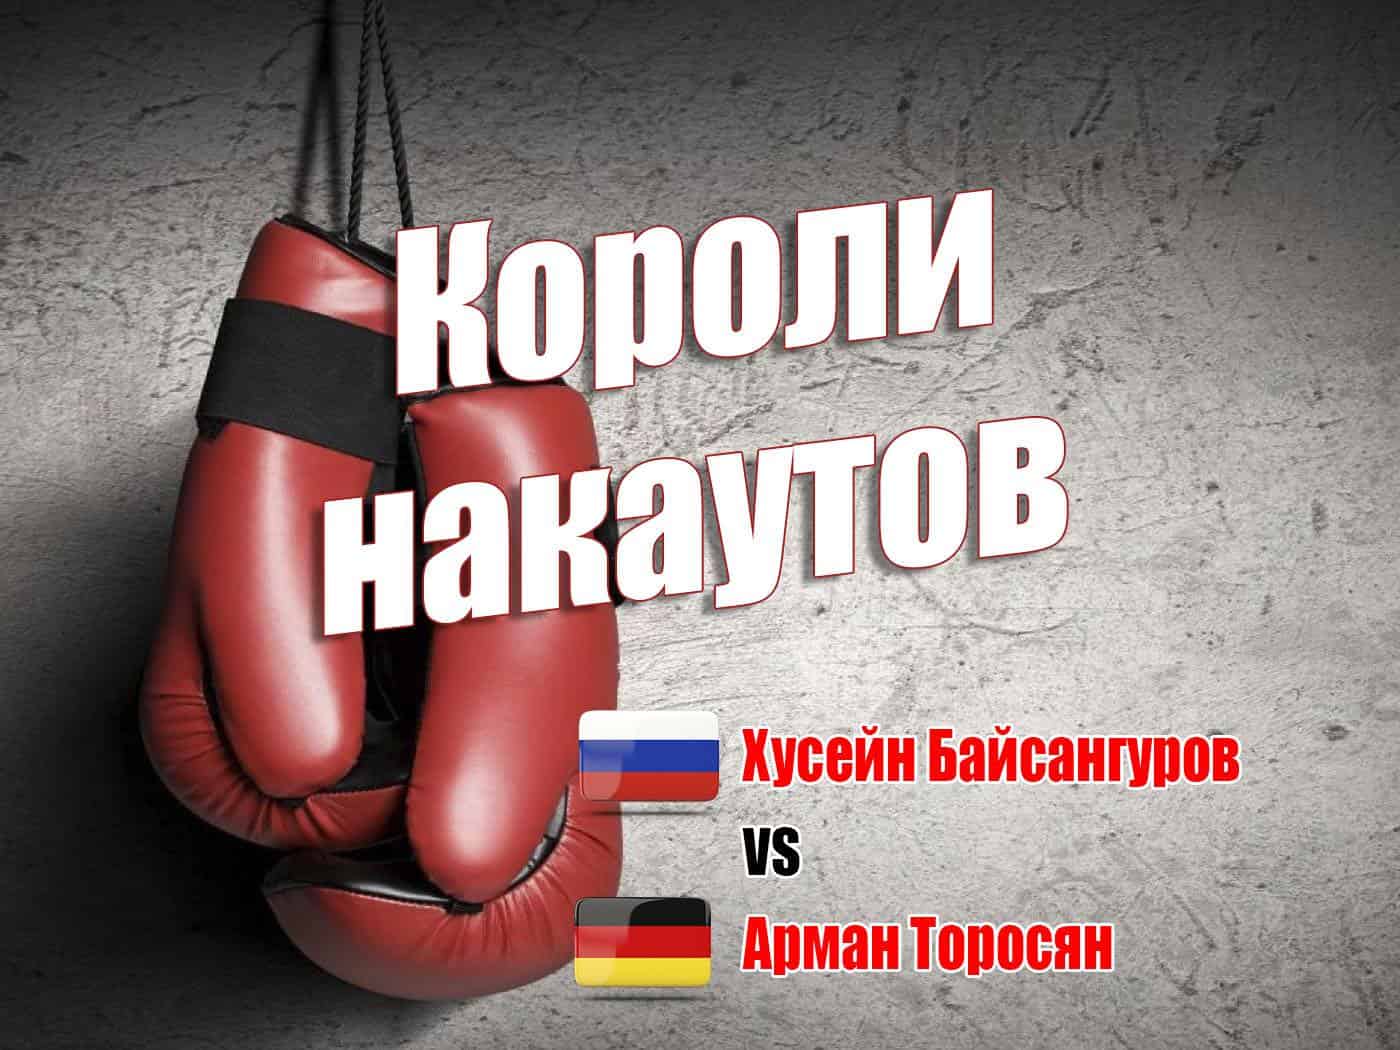 Профессиональный бокс. Короли нокаутов. Хусейн Байсангуров против Армана Торосяна. Трансляция из Санкт-Петербурга